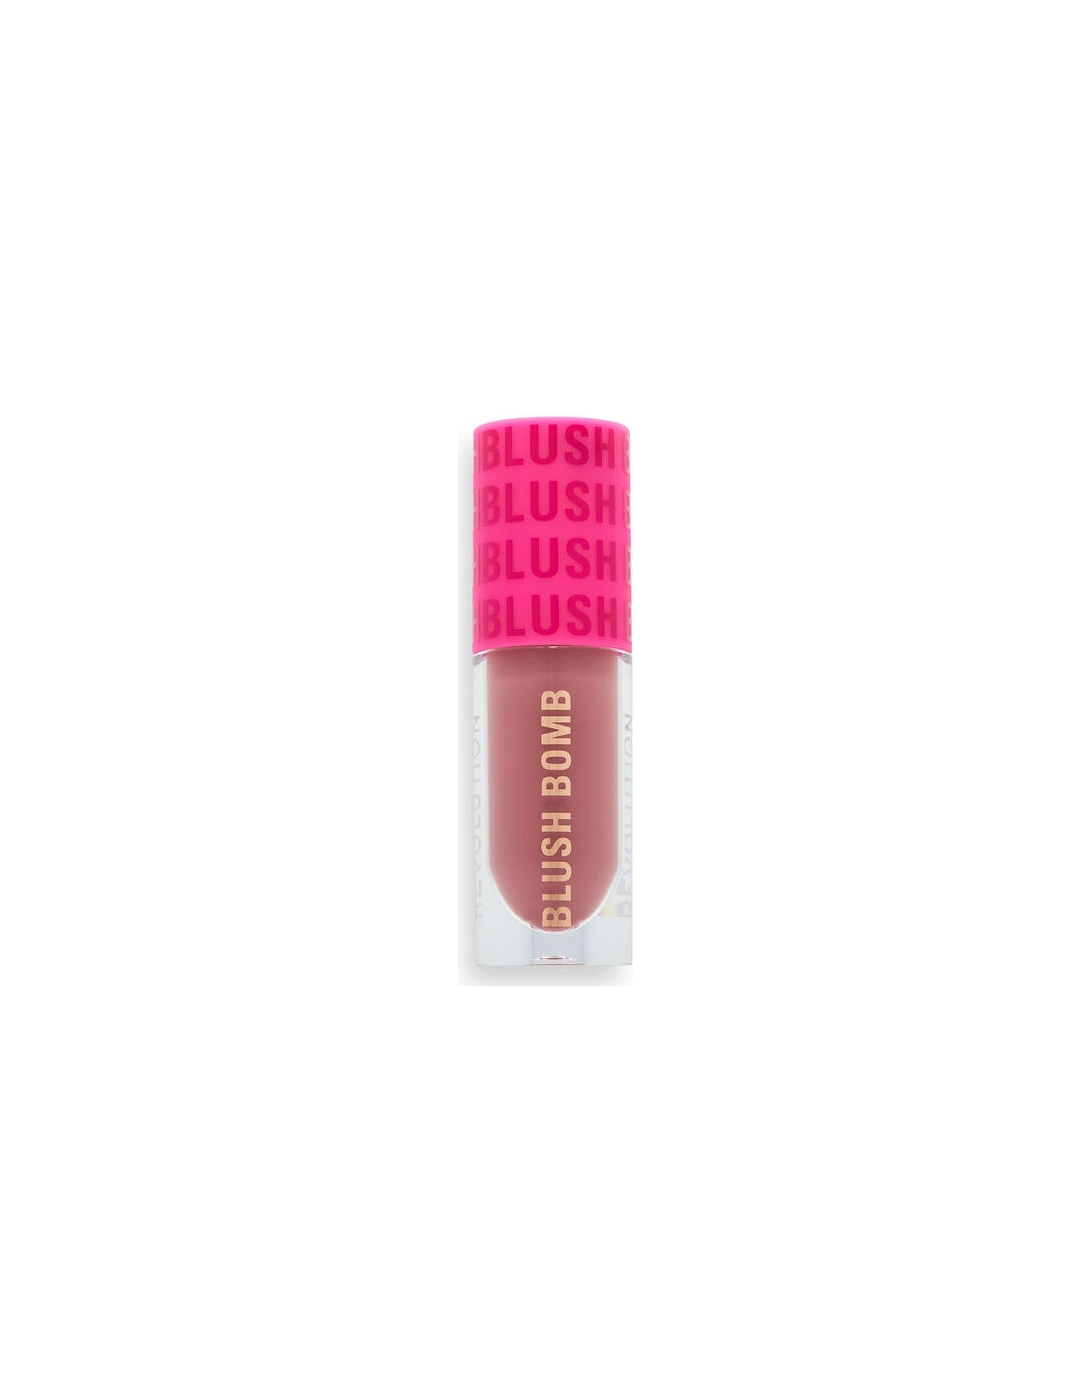 Makeup Blush Bomb Cream Blusher Rose Lust, 2 of 1